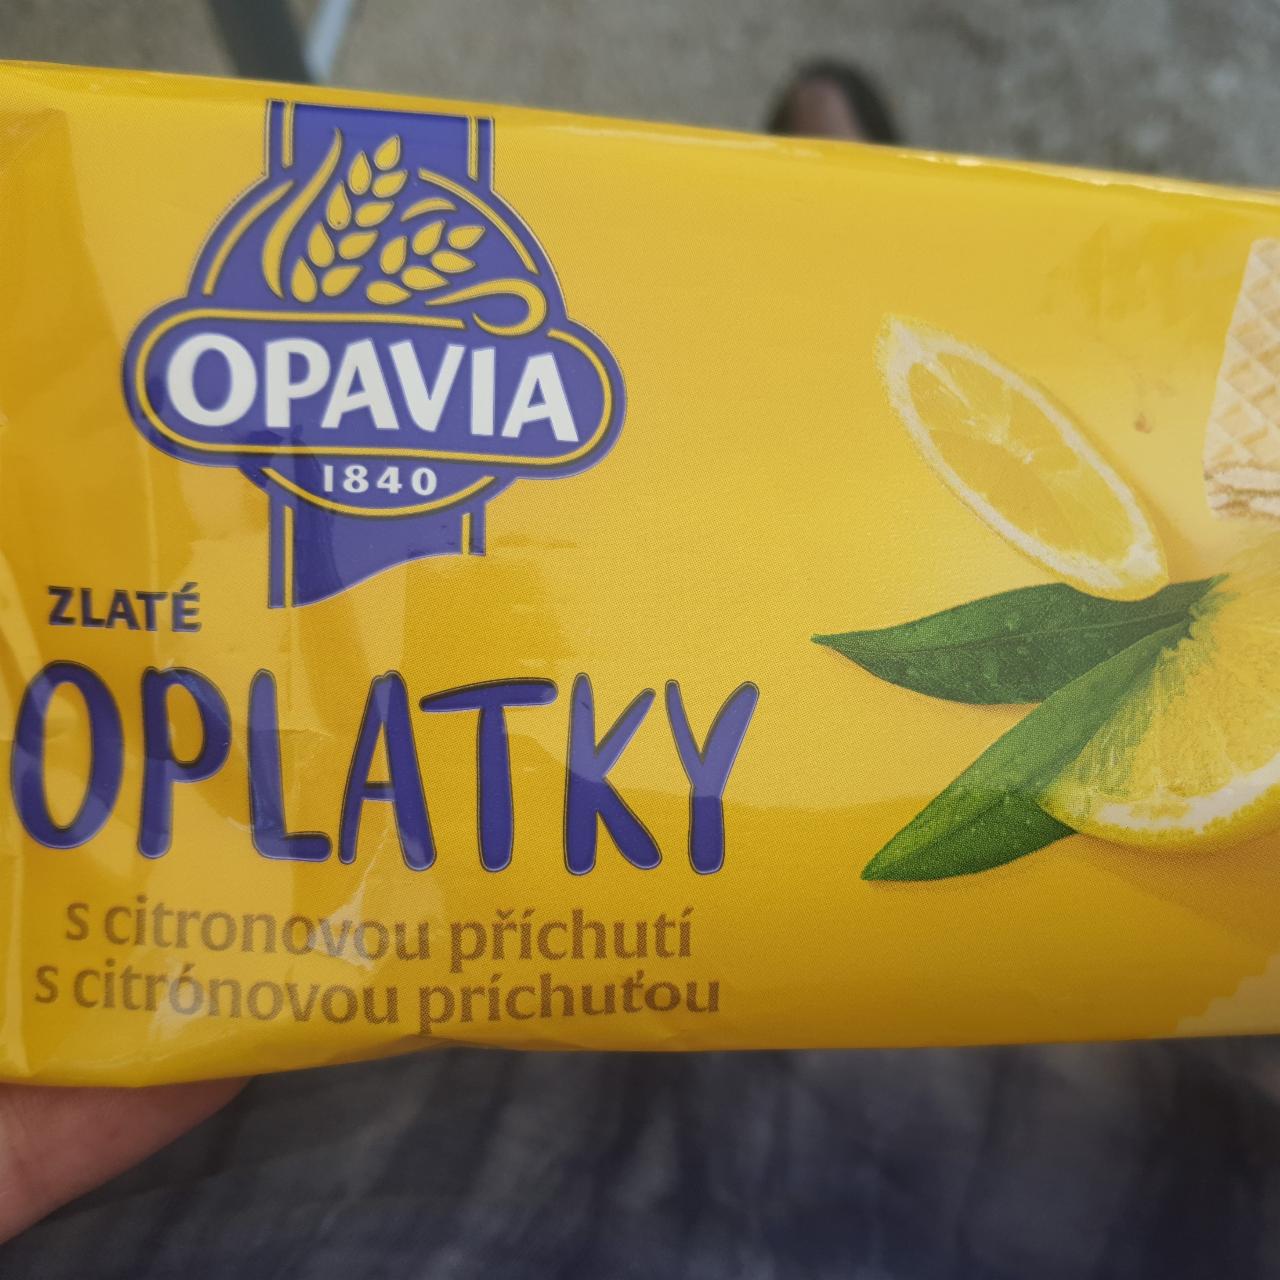 Fotografie - Zlaté oplatky s citronovou příchutí Opavia